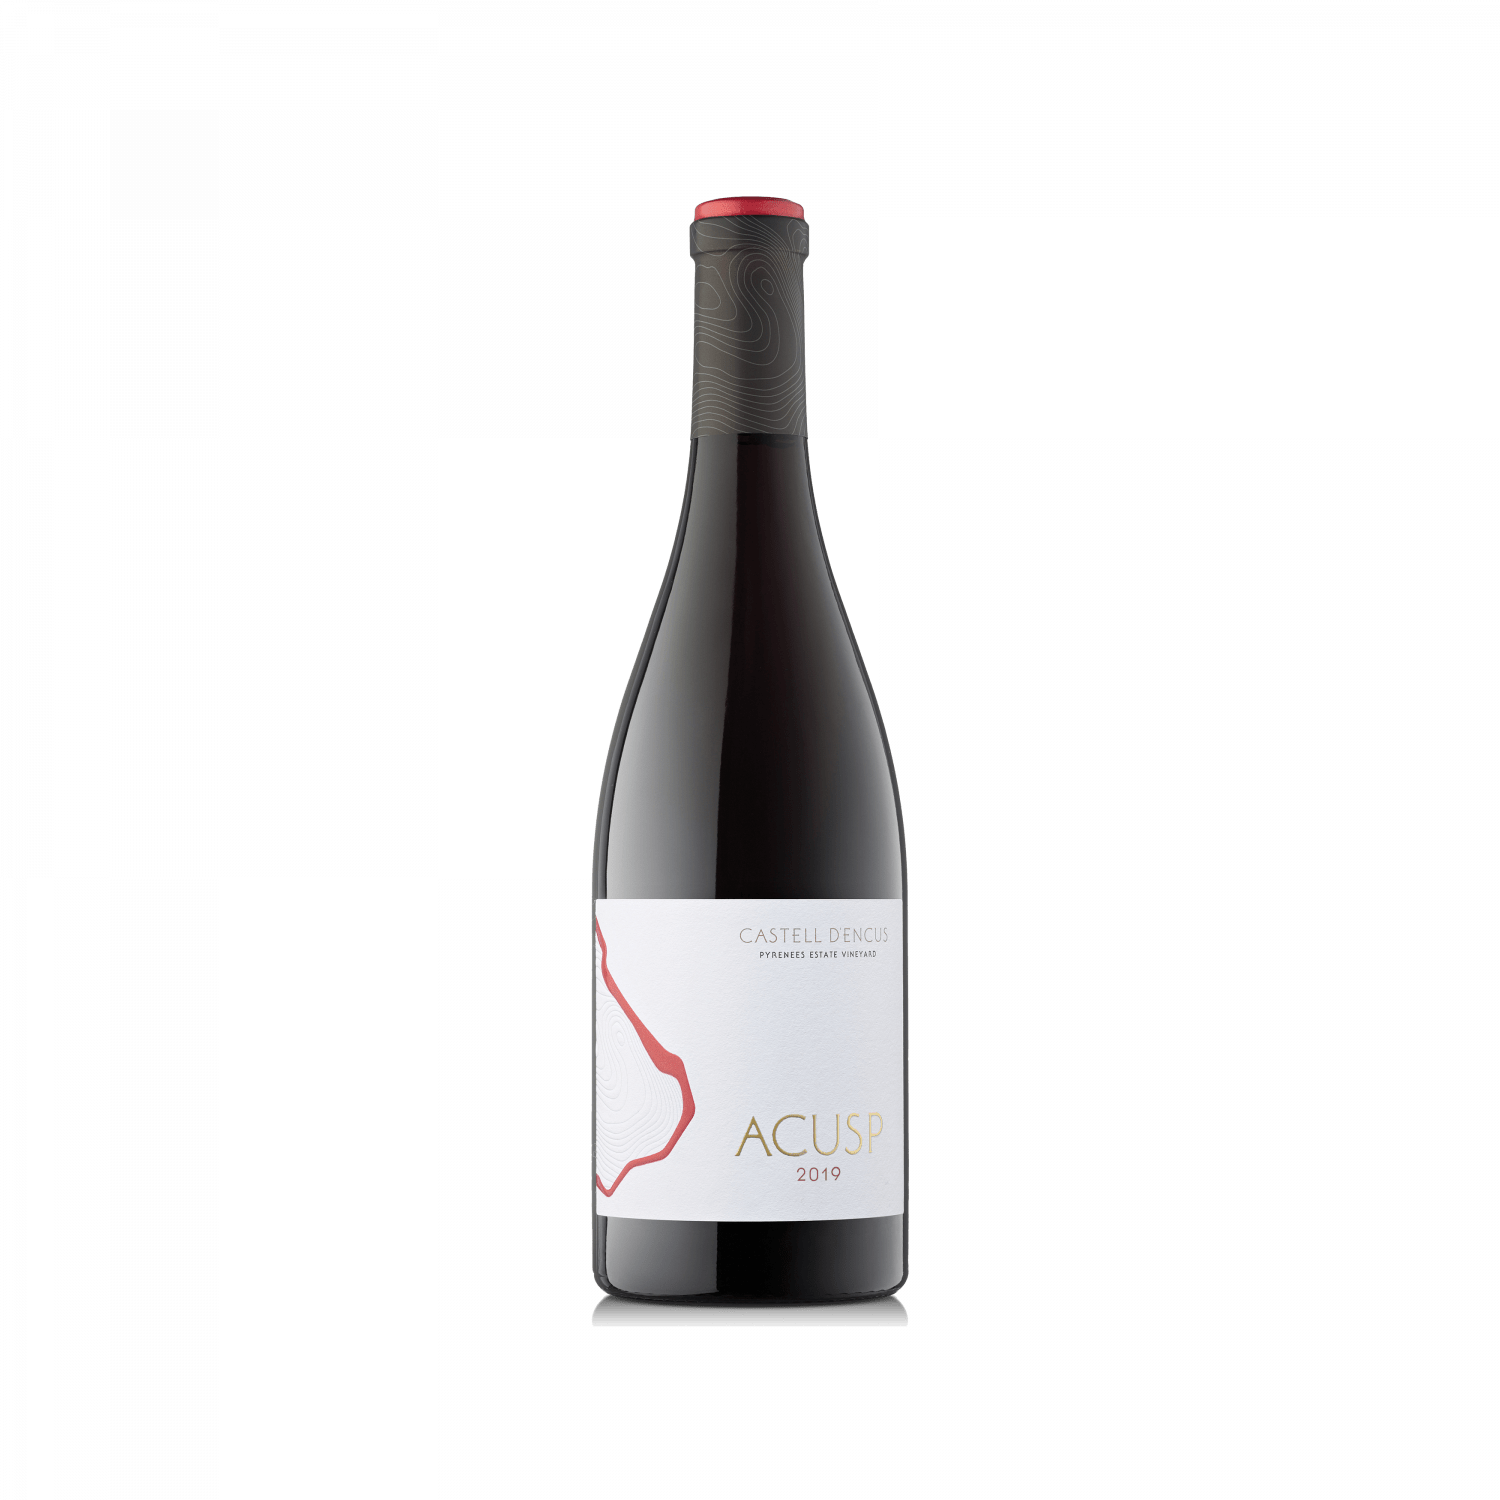 Ampolla d'estudi del vi ACUSP 2019